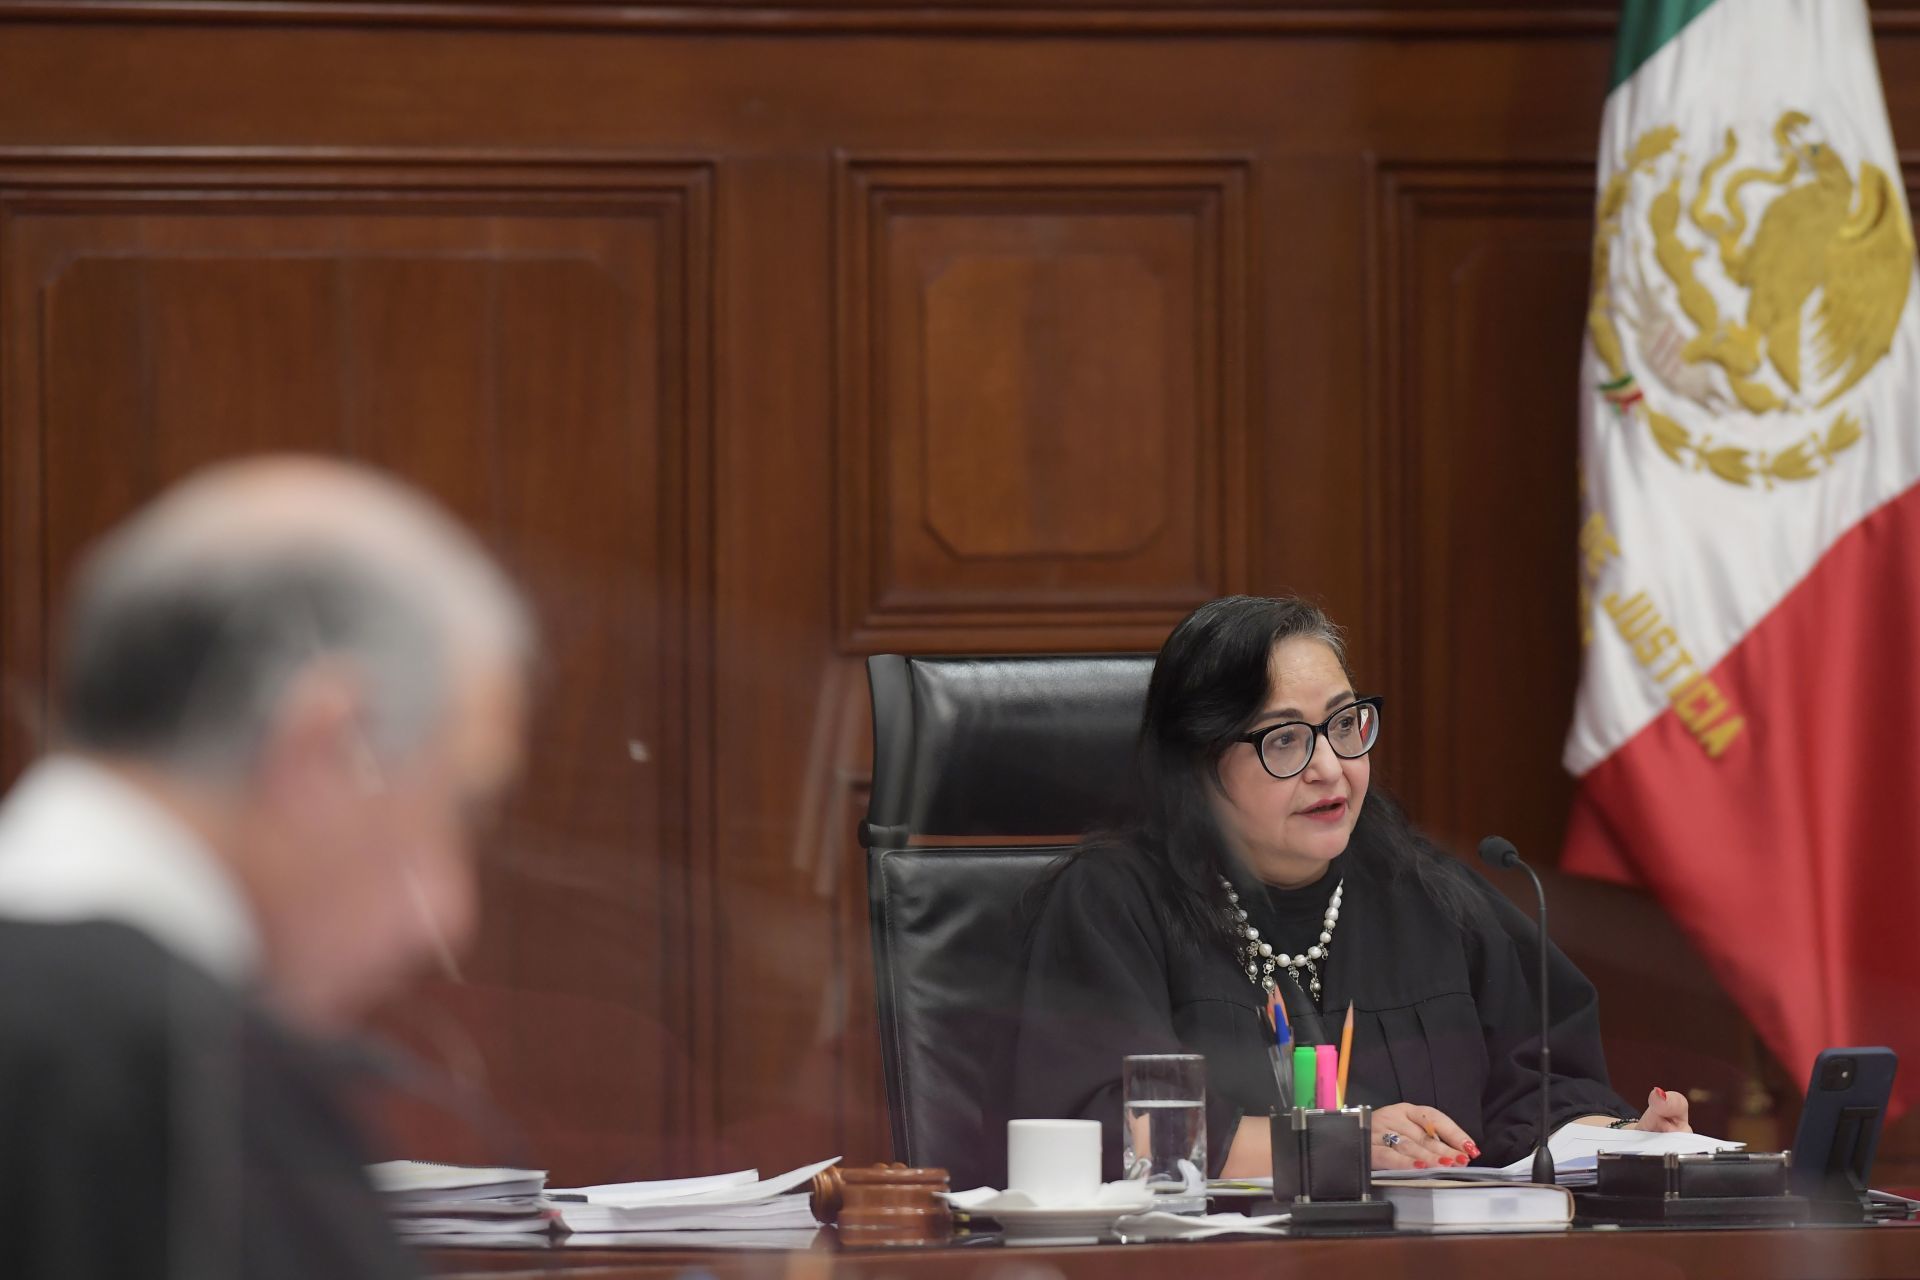 Norma Piña y Arturo Zaldívar chocaron por el método para elegir a ministros de la Corte